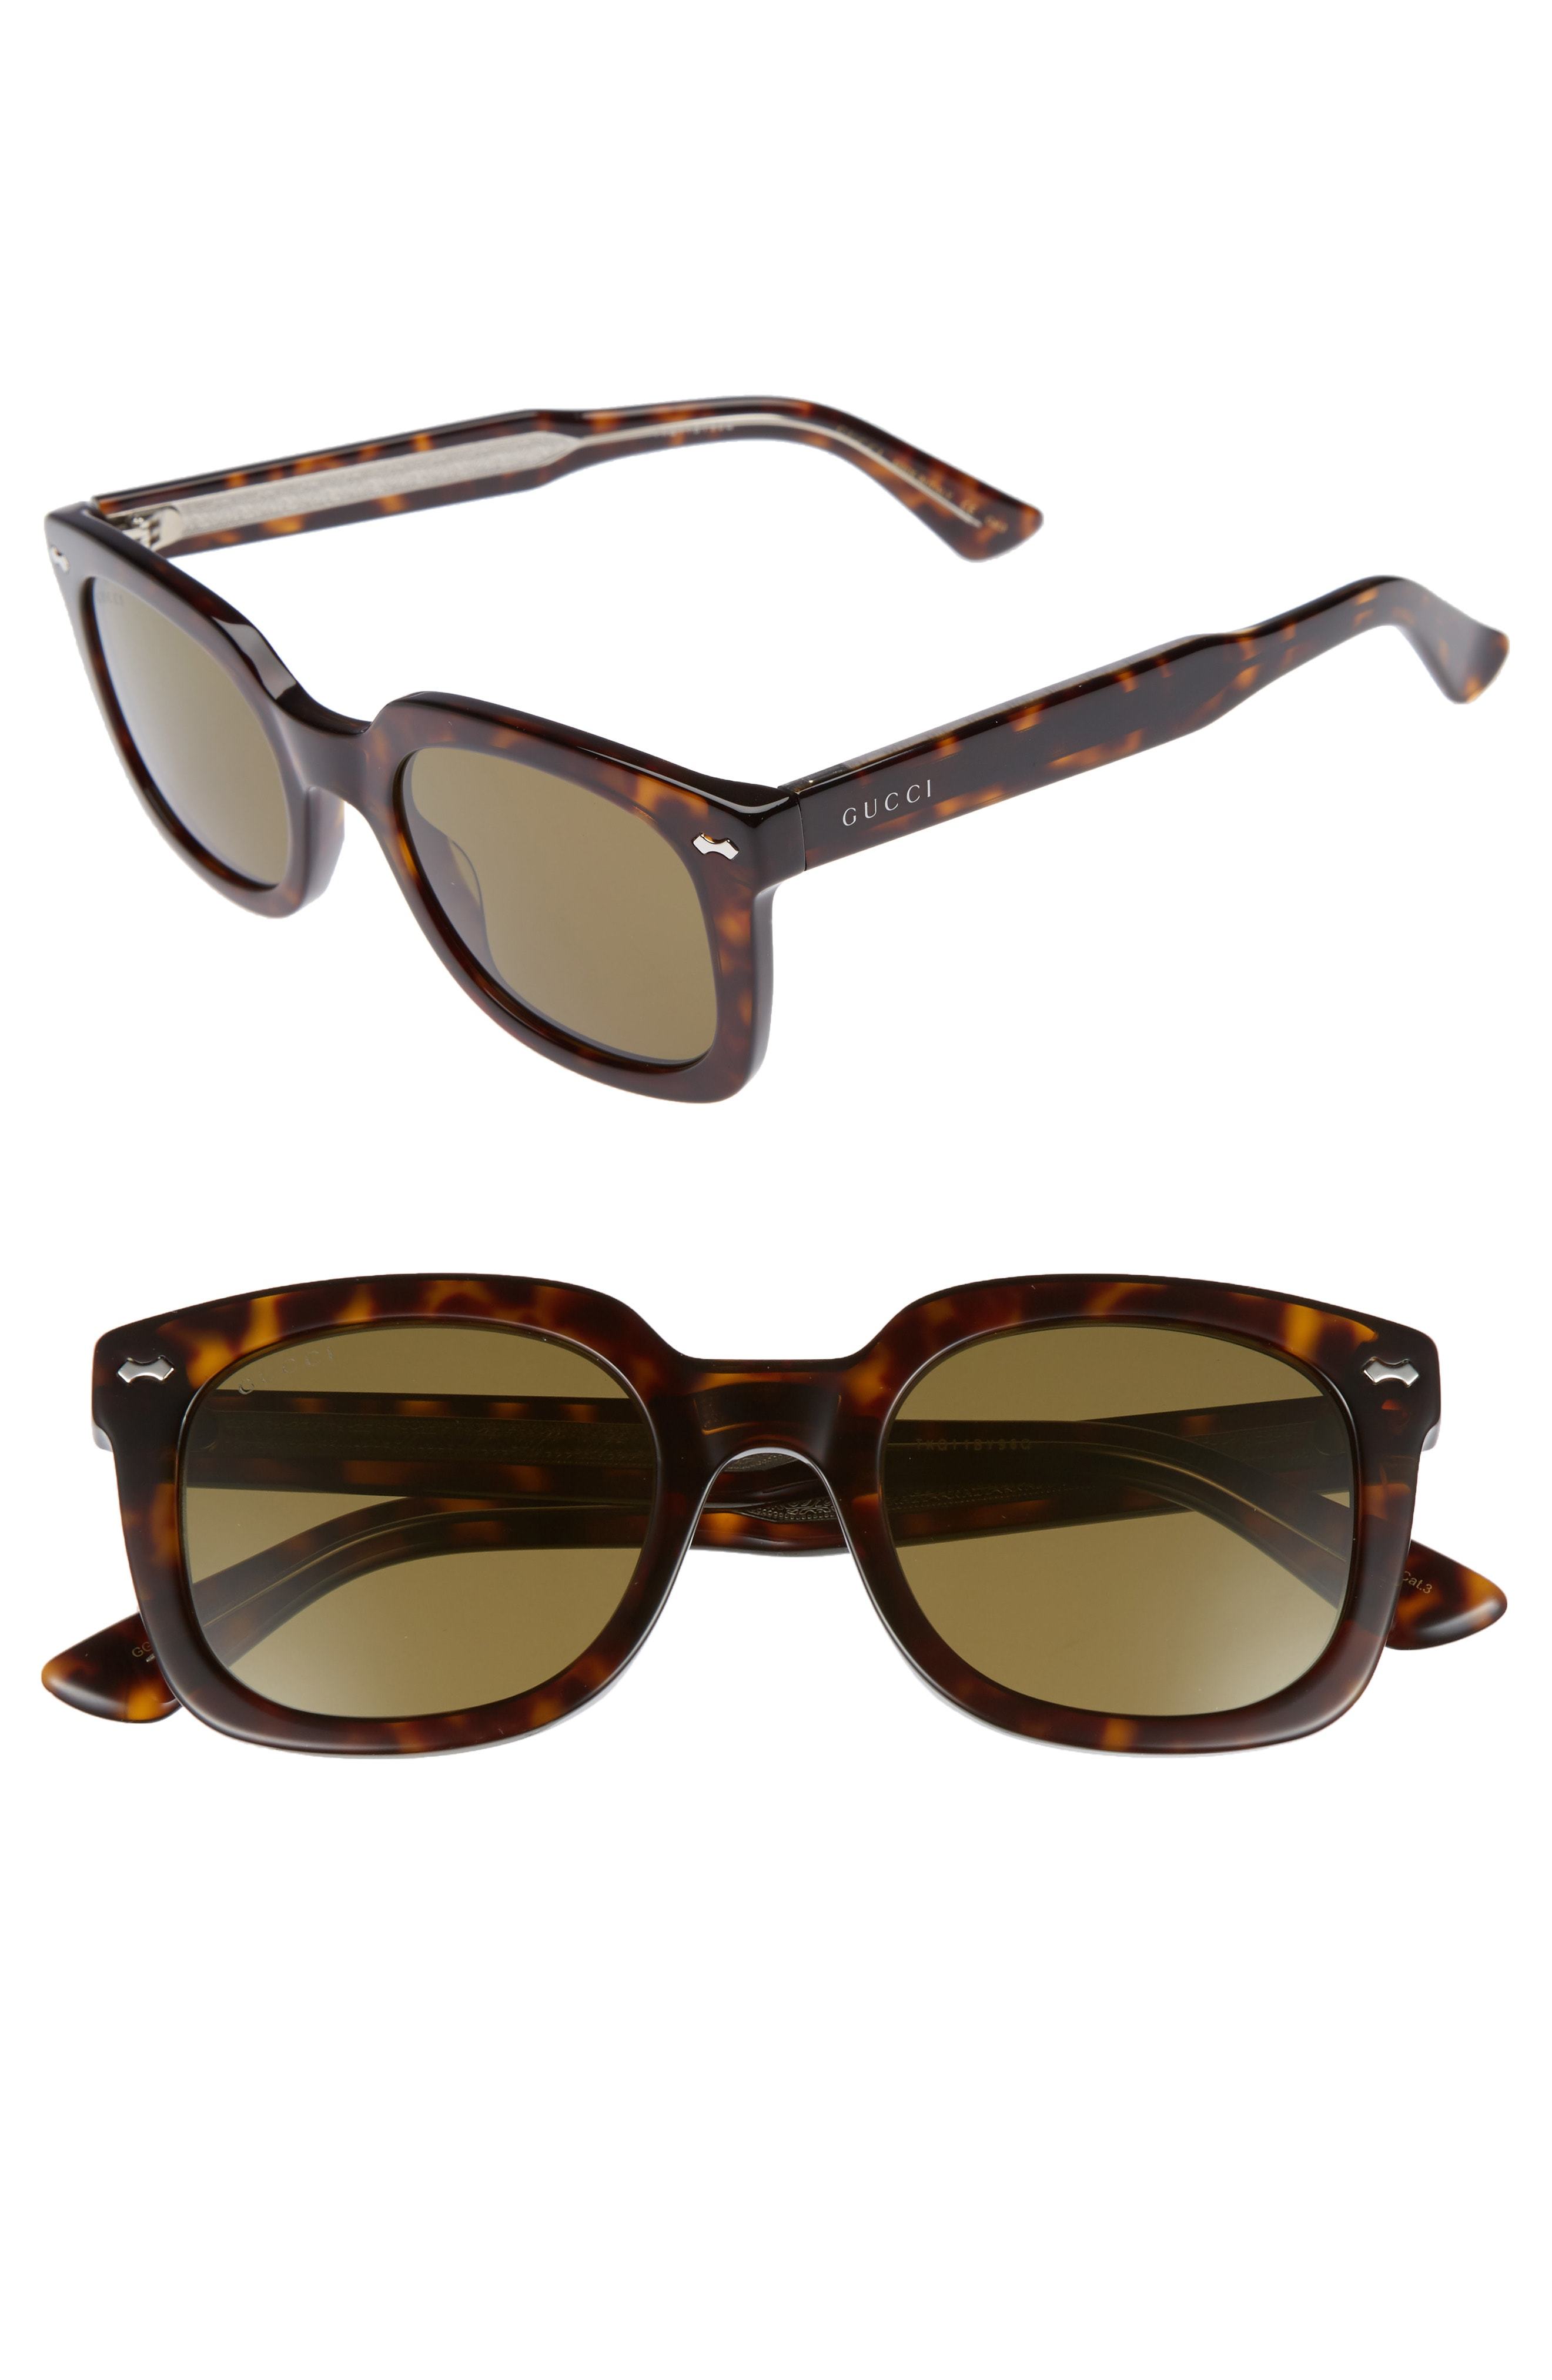 Gucci 50mm Square Sunglasses, $360 